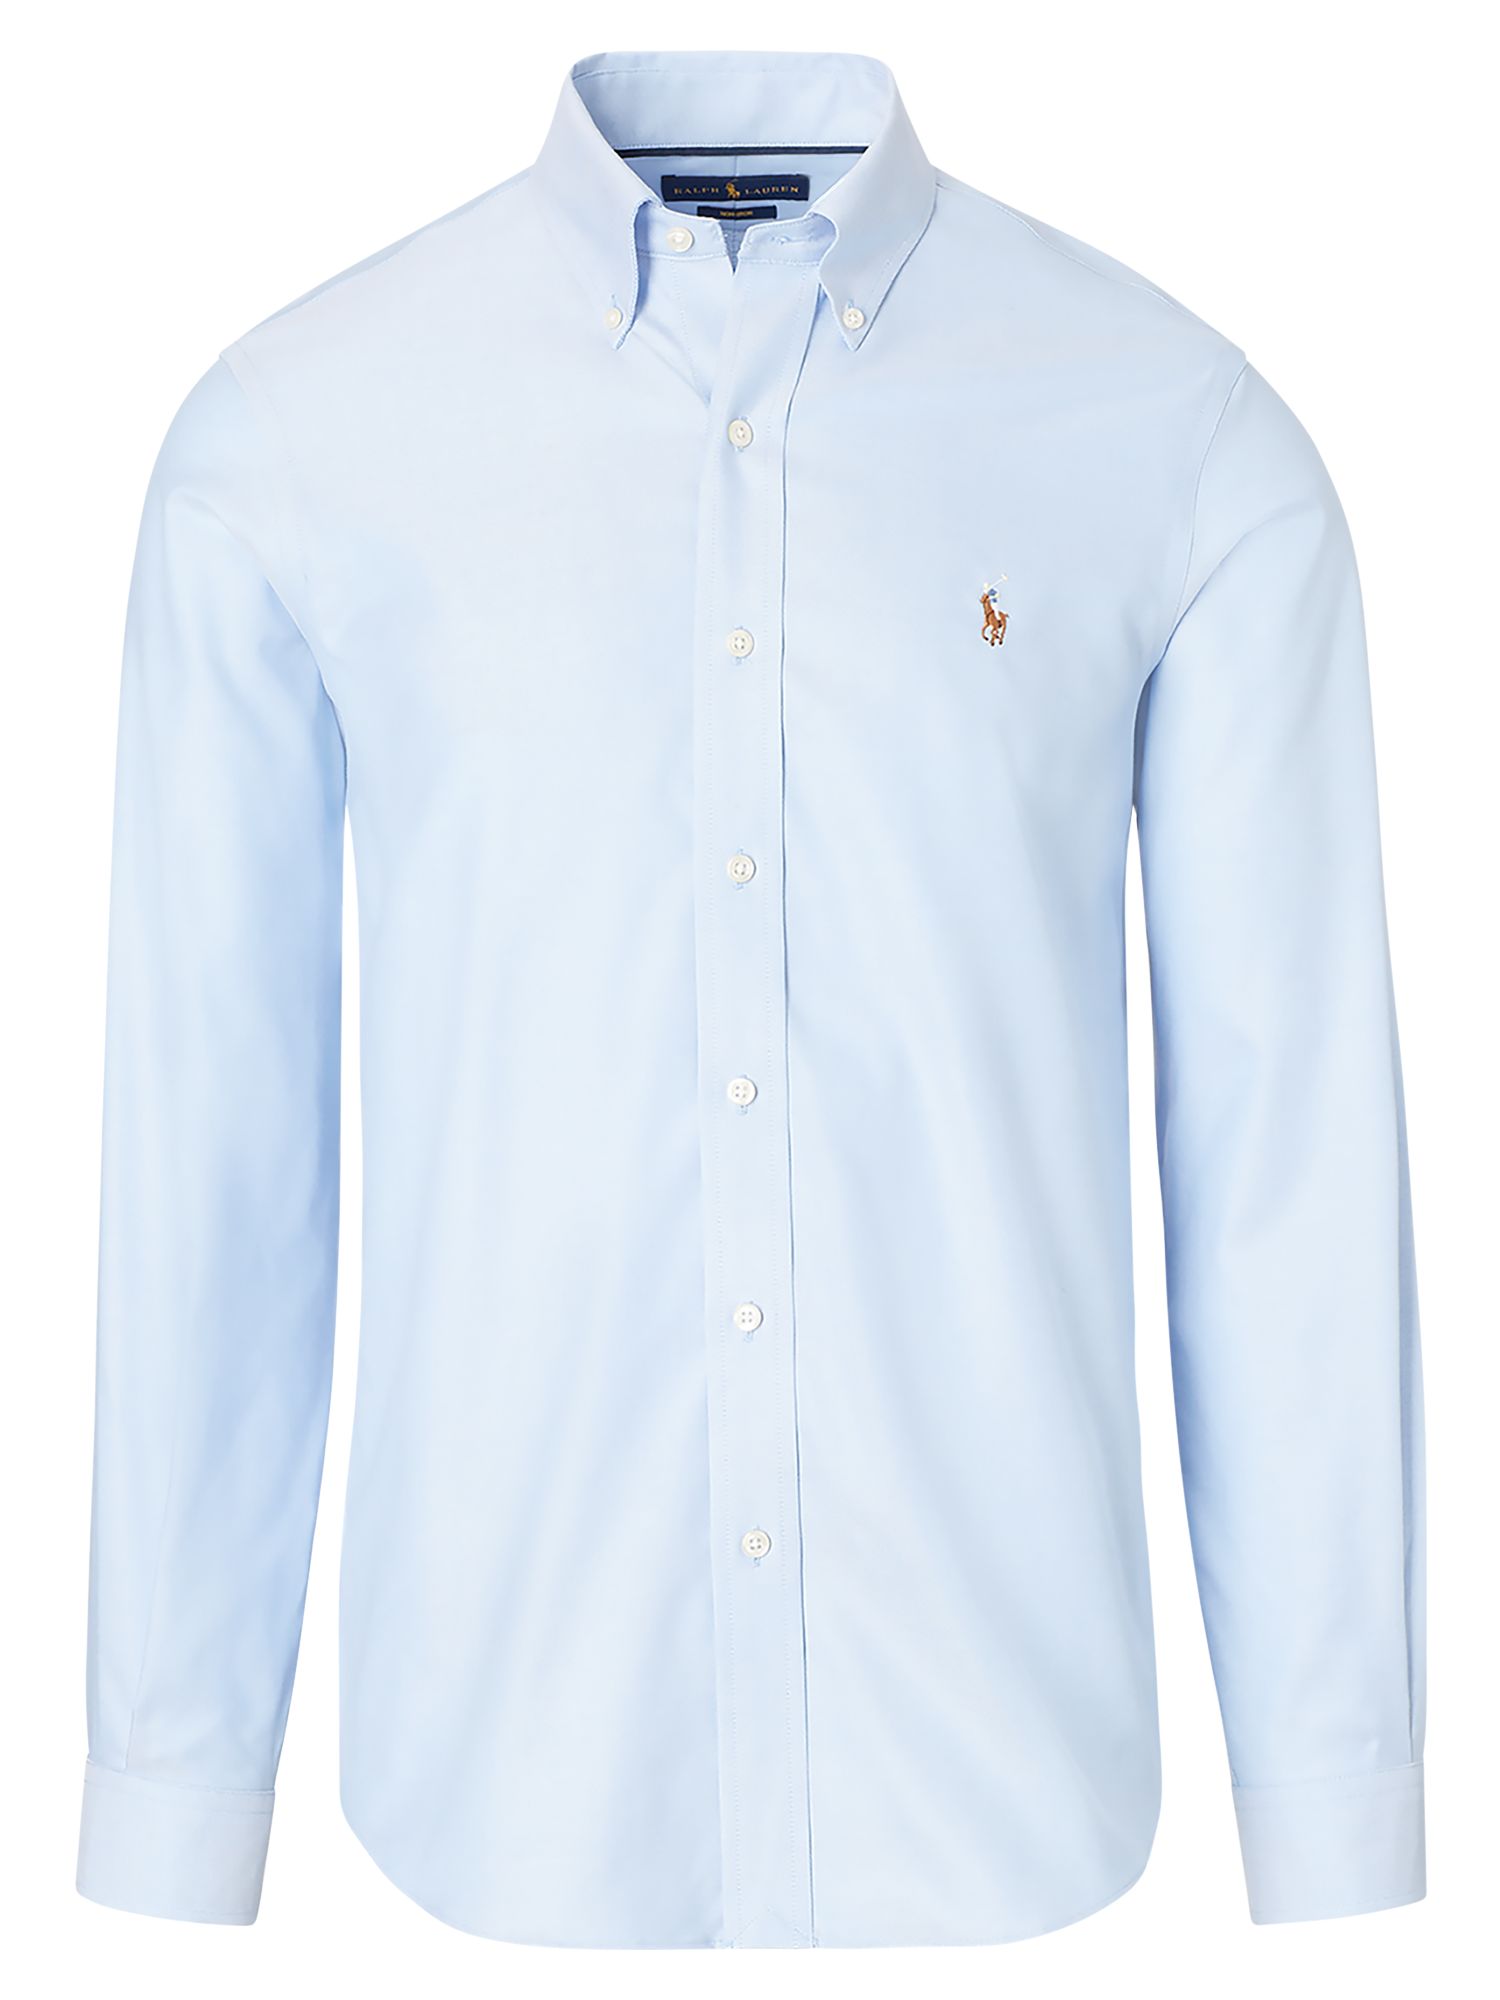 mens light blue ralph lauren shirt